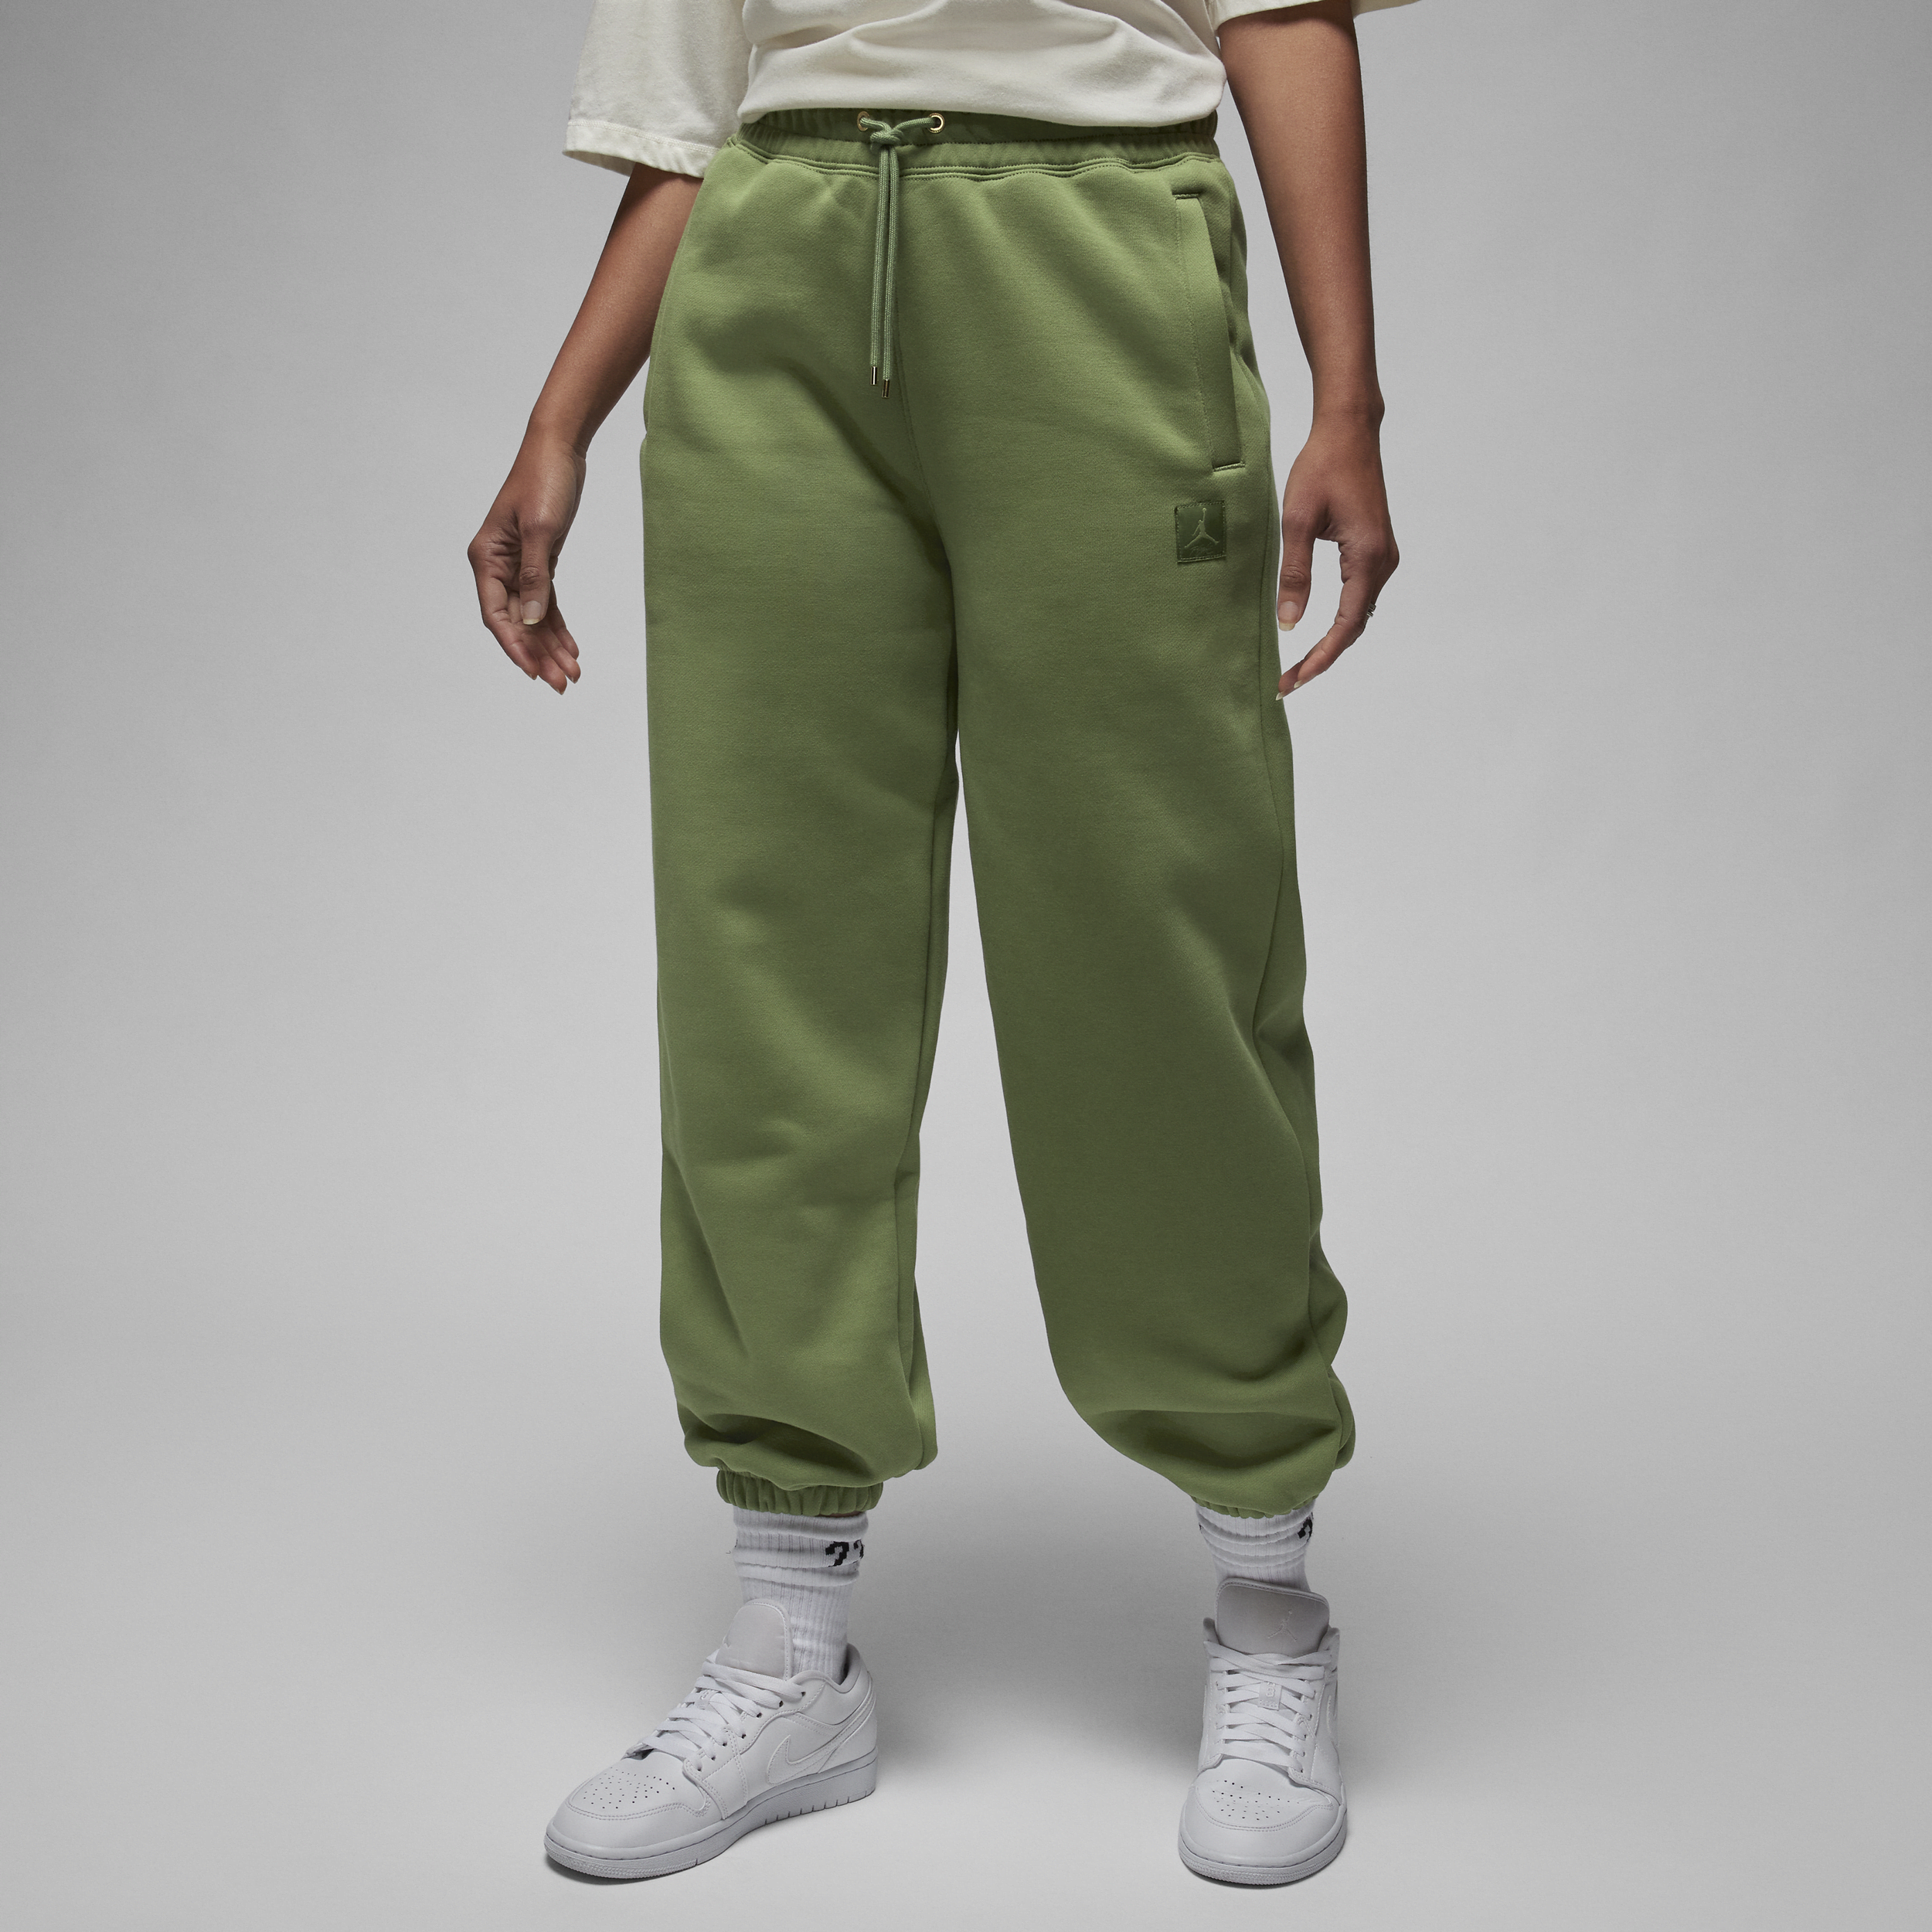 Jordan Flight Fleece Pantalón - Mujer - Verde